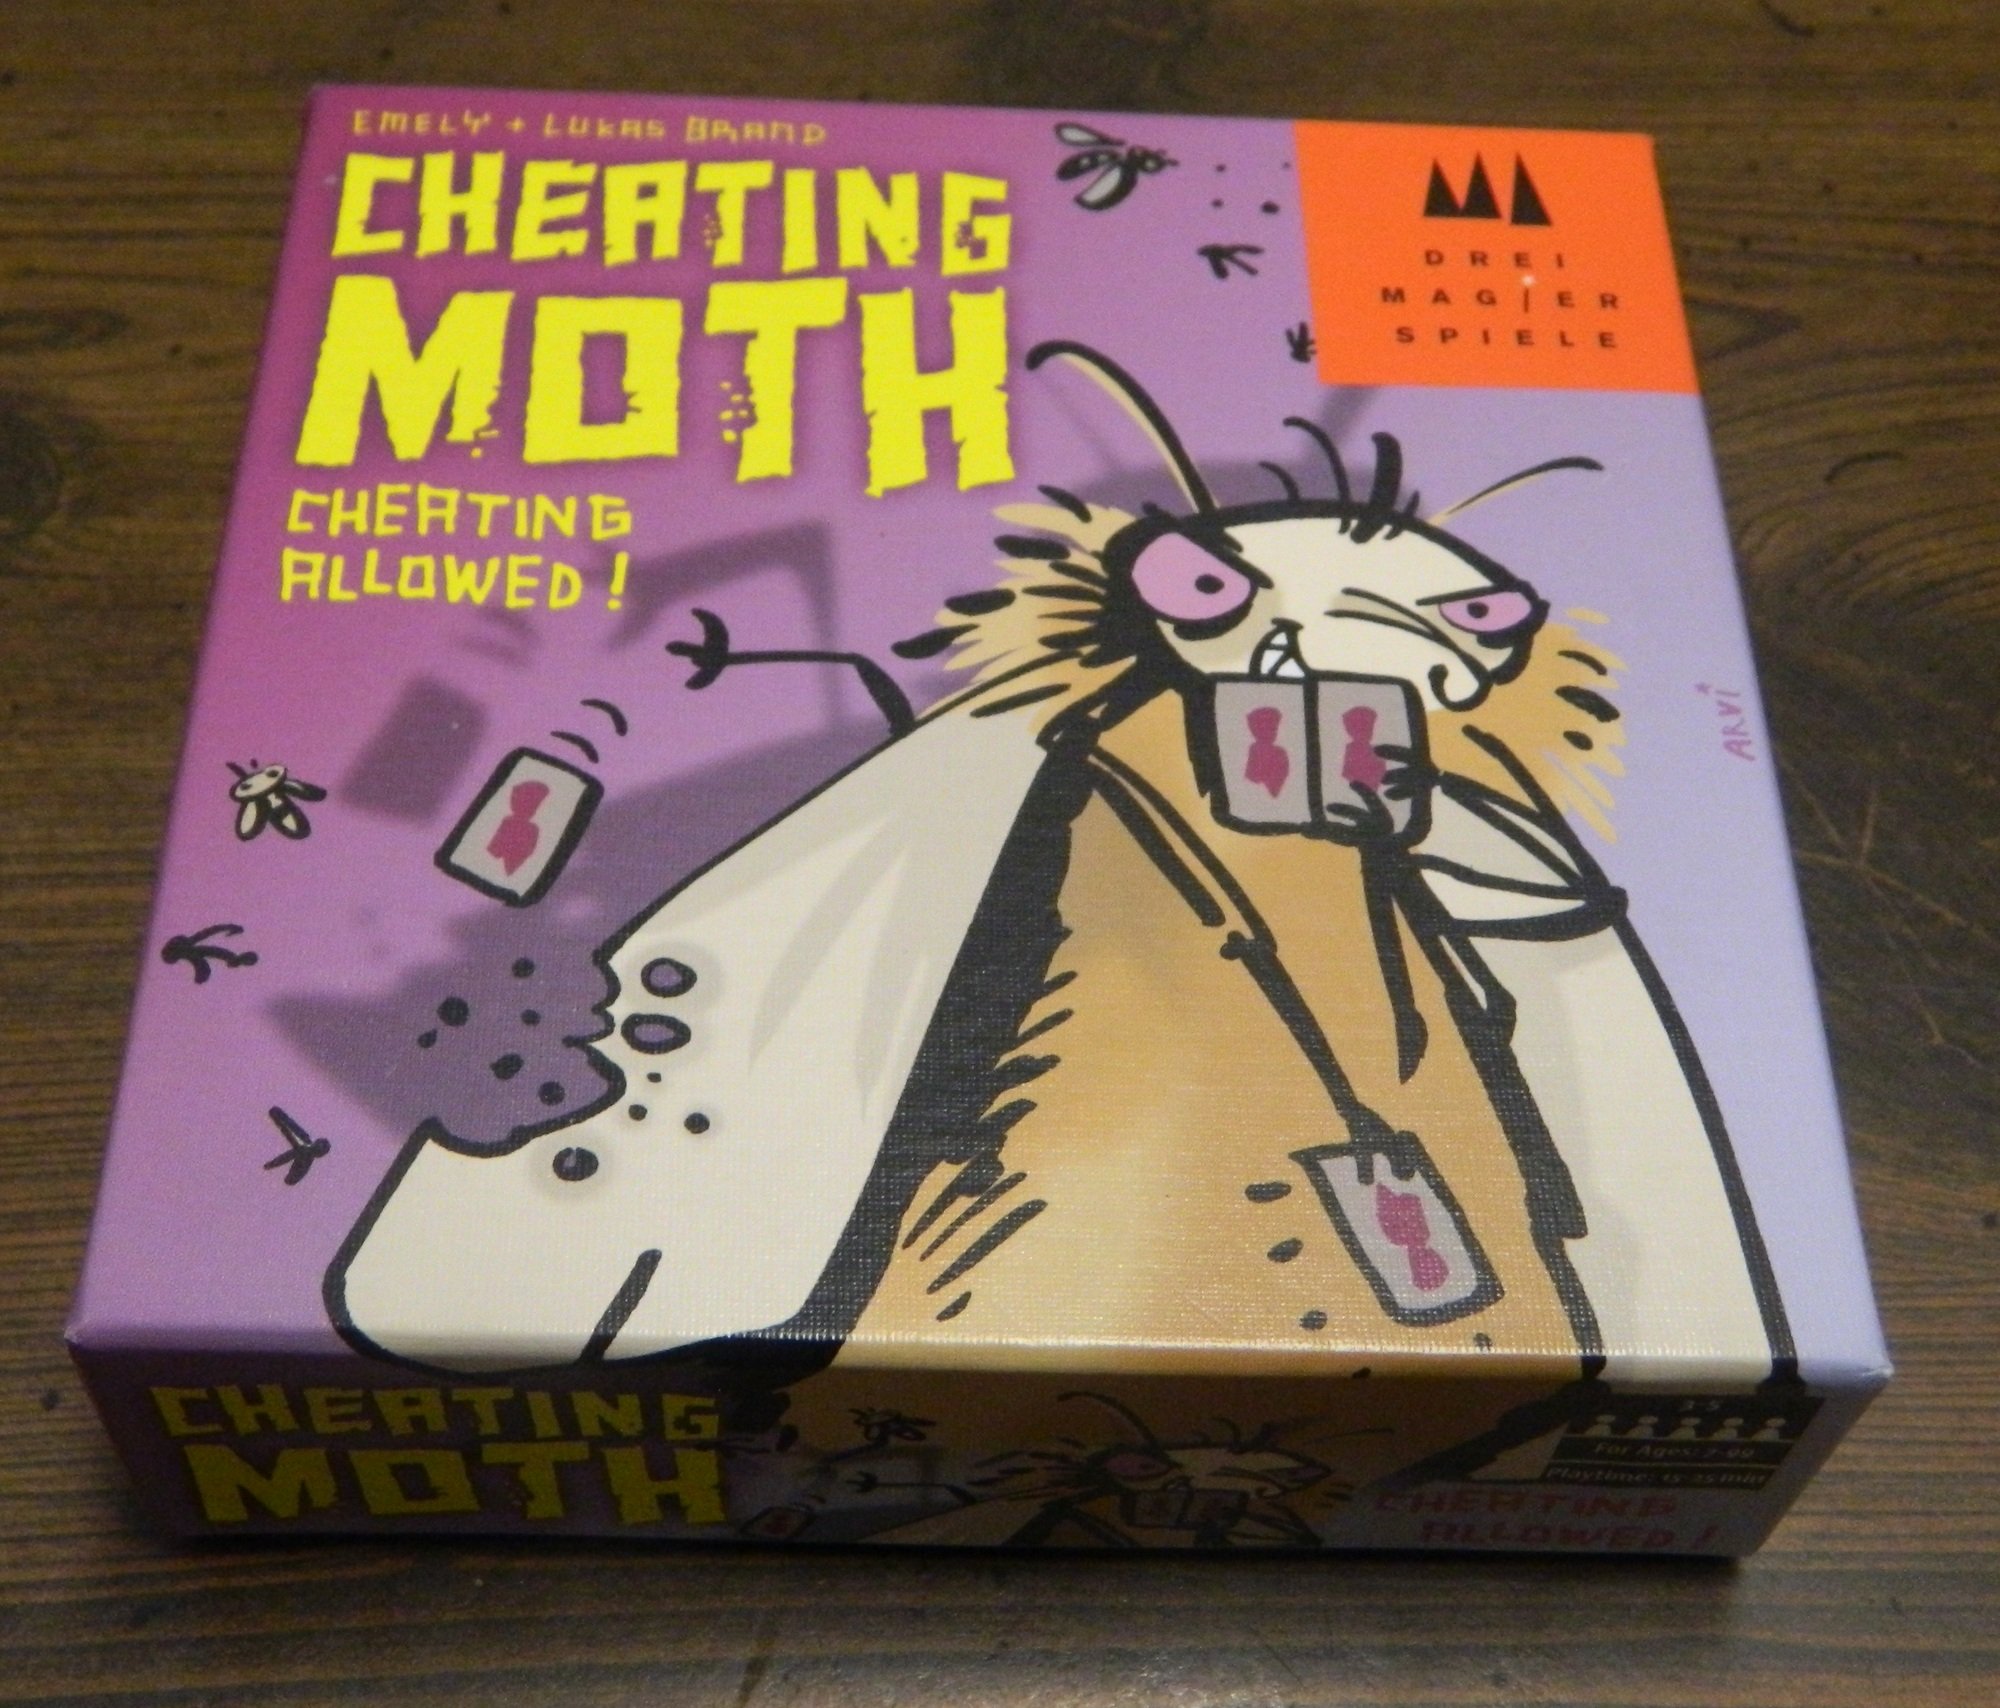 https://www.geekyhobbies.com/wp-content/uploads/2016/12/Cheating-Moth-Box.jpg